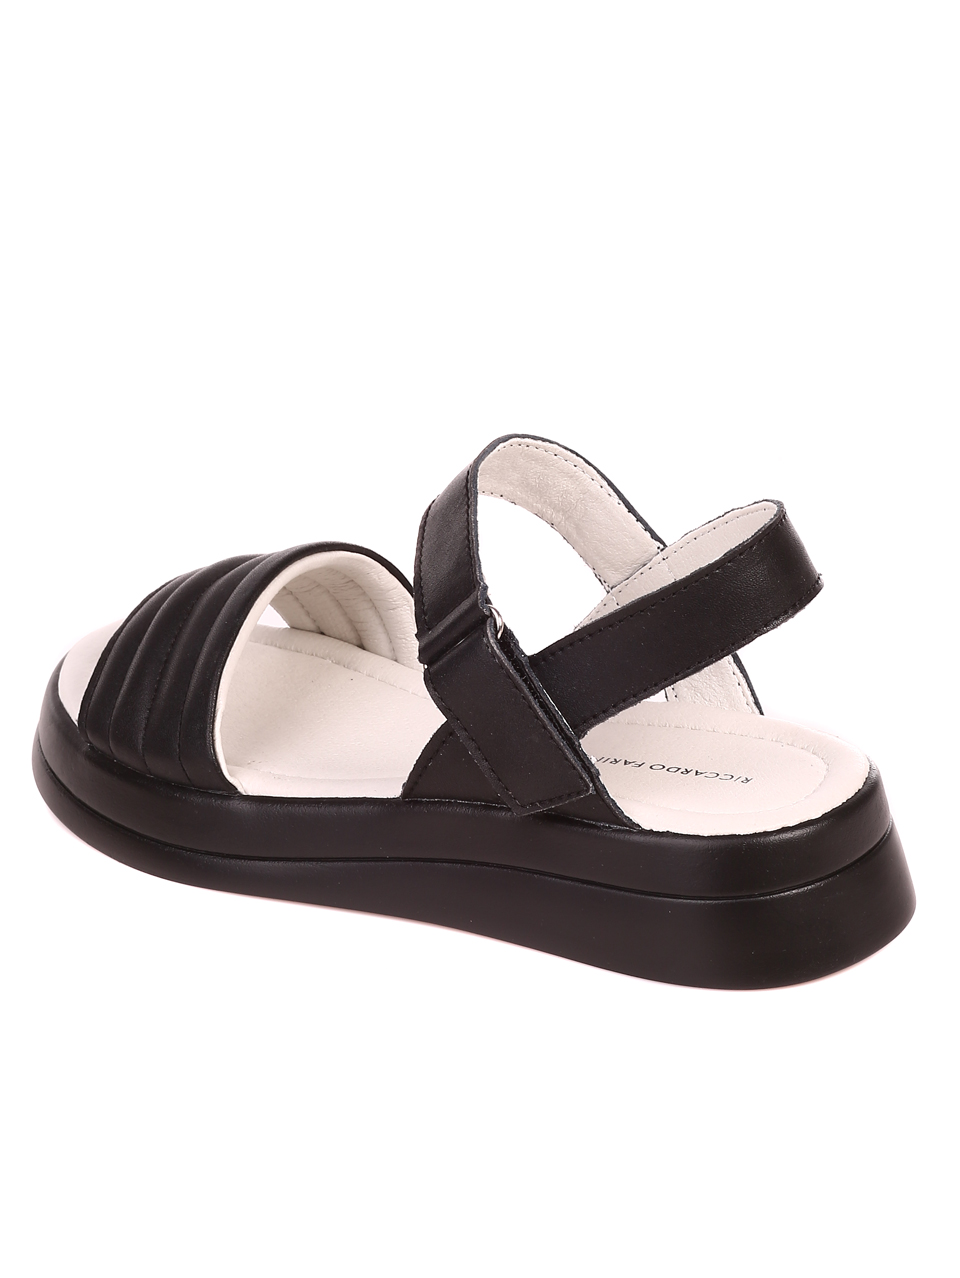 Ежедневни дамски сандали от естествена кожа 4AF-22154 black